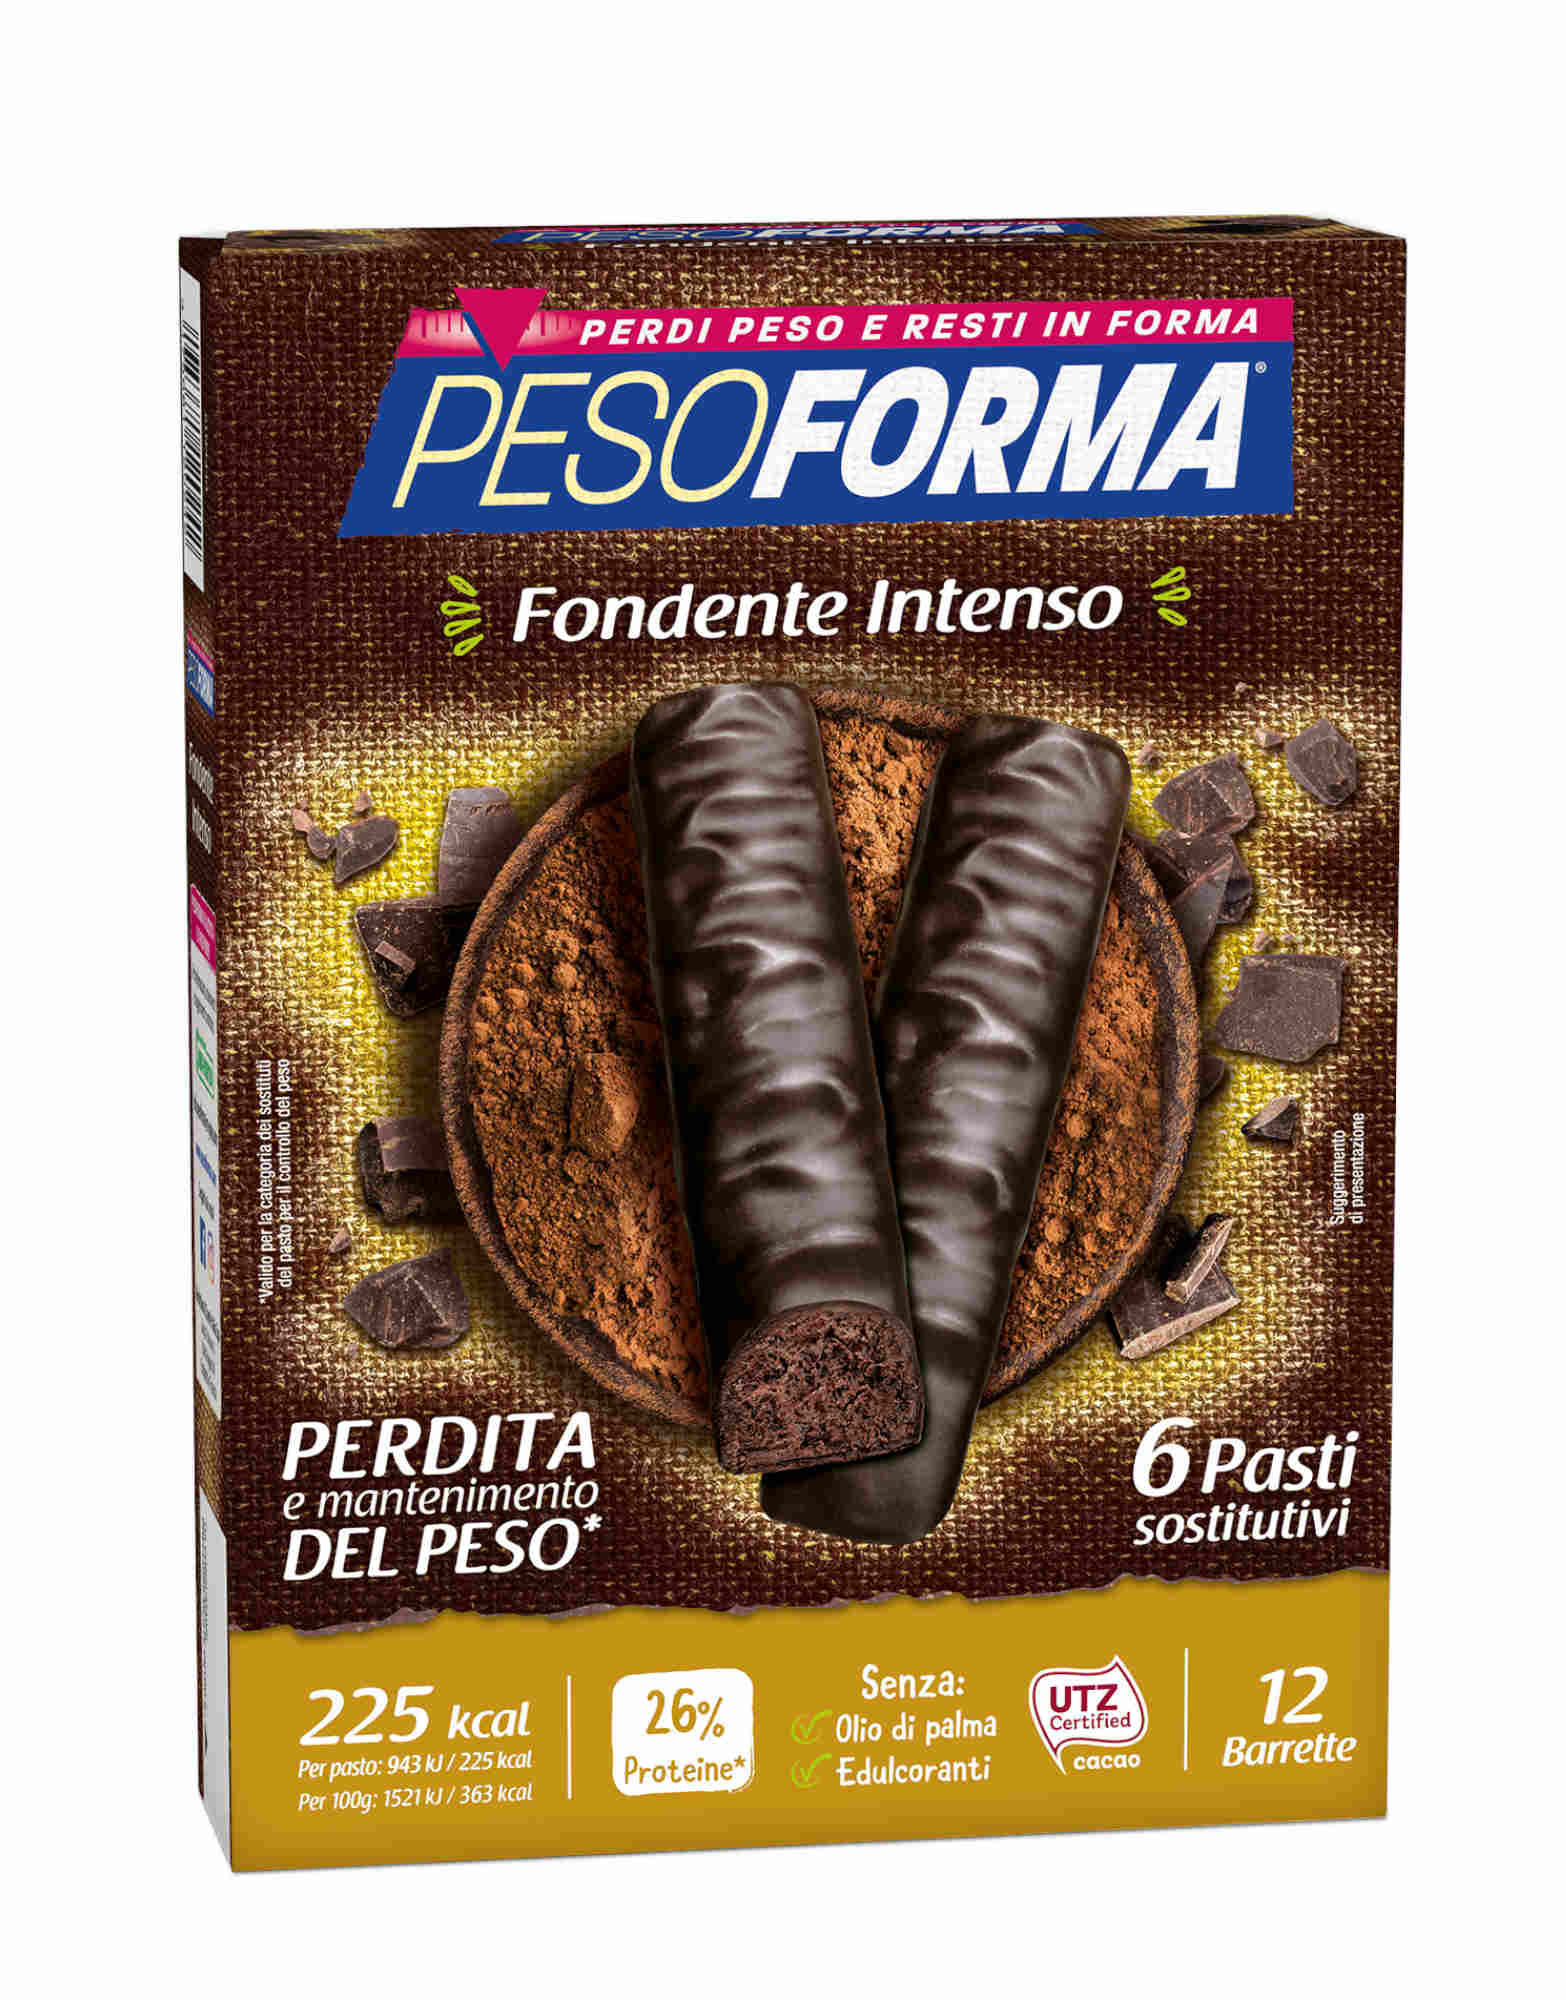 pesoforma barrette al cioccolato fondente intenso 12 barrette da 31 grammi doppio cioccolato